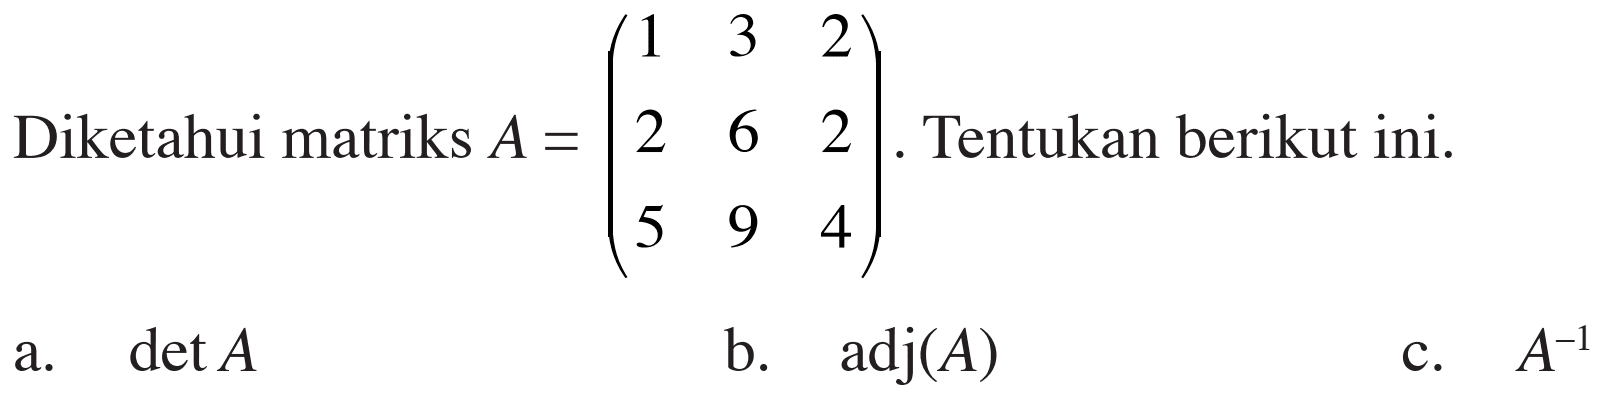 Diketahui matriks A= (1 3 2 2 6 2 5 9 4). Tentukan berikut ini. a. det A b. adj(A) c. A^-1